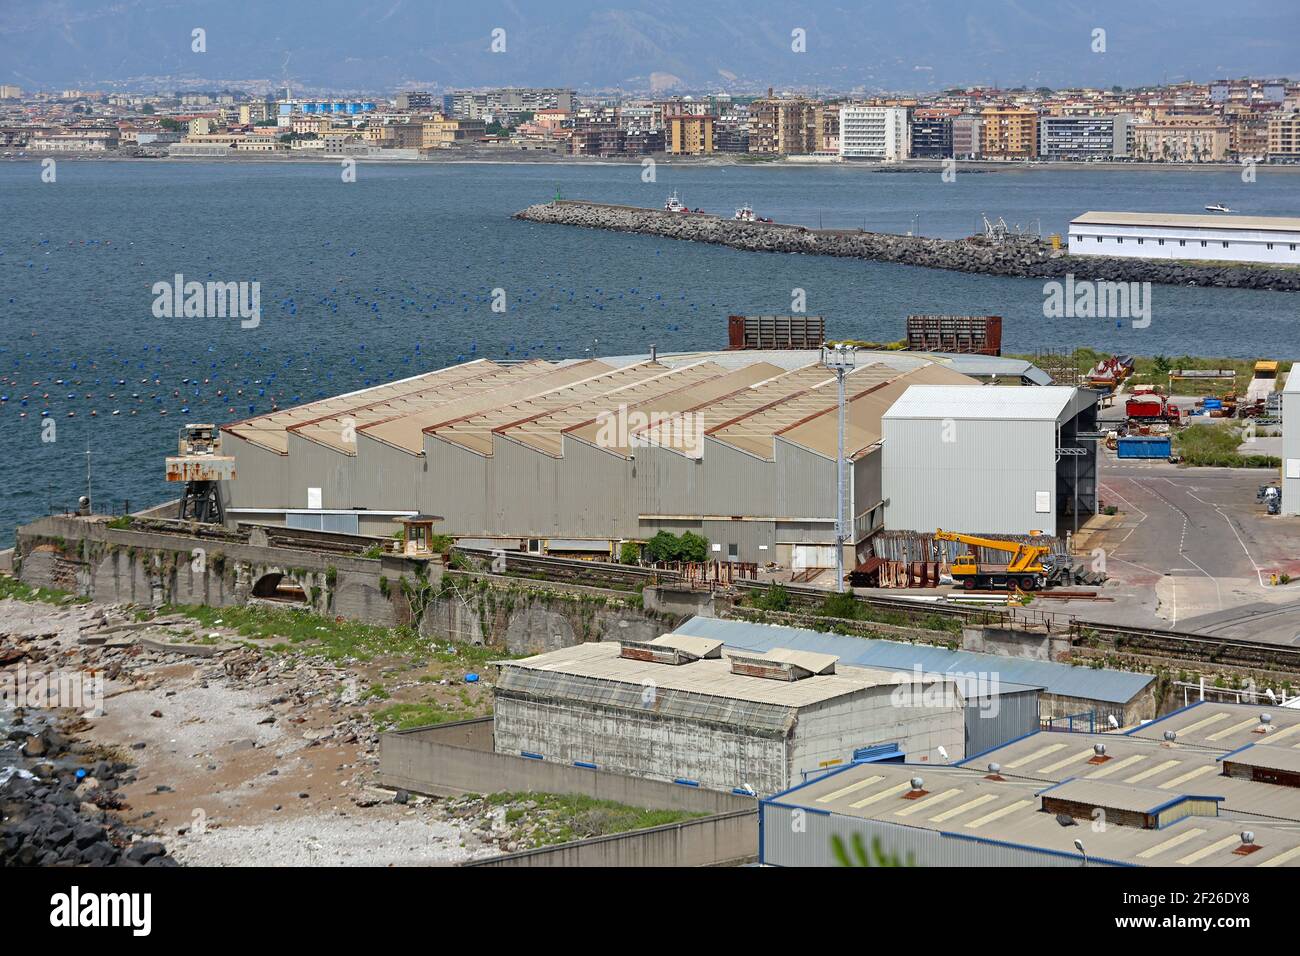 Bâtiment du chantier naval à Castellammare di Stabia près de Naples Italie Banque D'Images